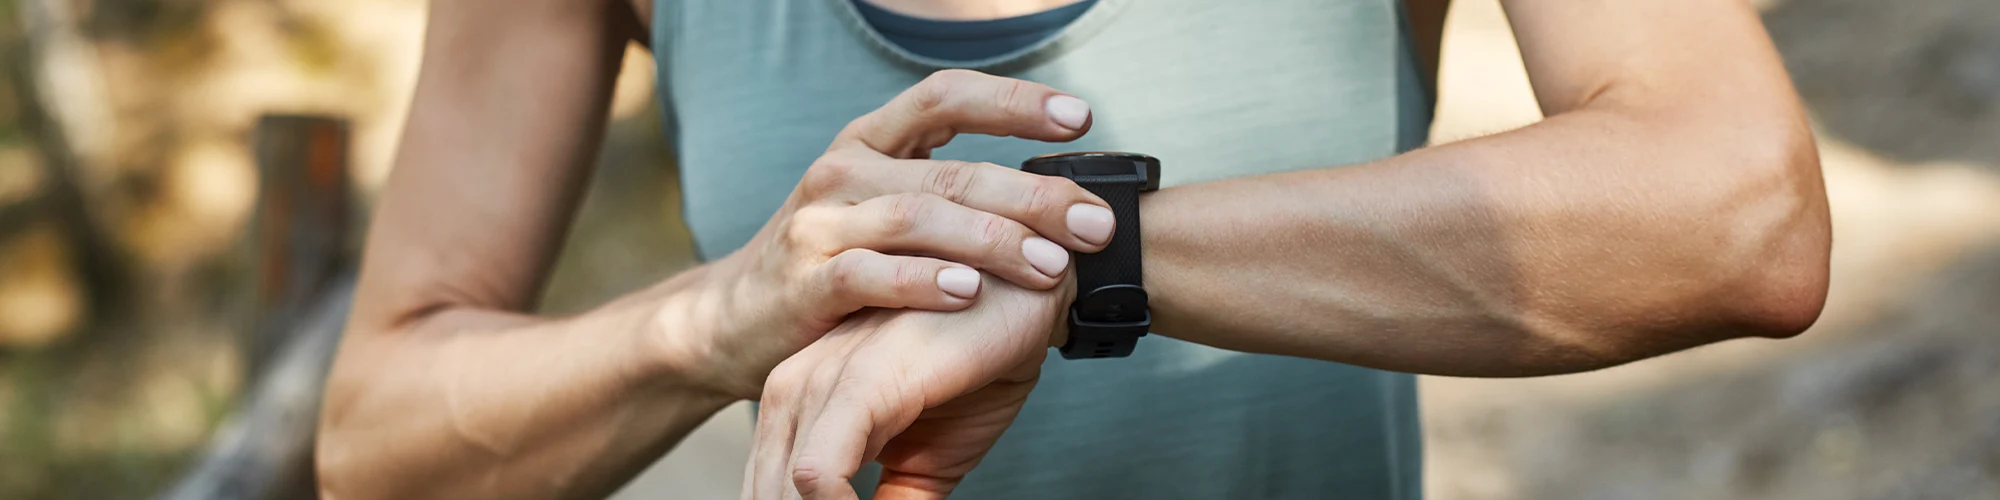 Smartwatches Användbara och innovativa tekniska klockor som kombinerar traditionell design med smarta funktioner. Håll dig ansluten, övervaka din hälsa och ta del av praktiska appar och funktioner direkt från handleden.